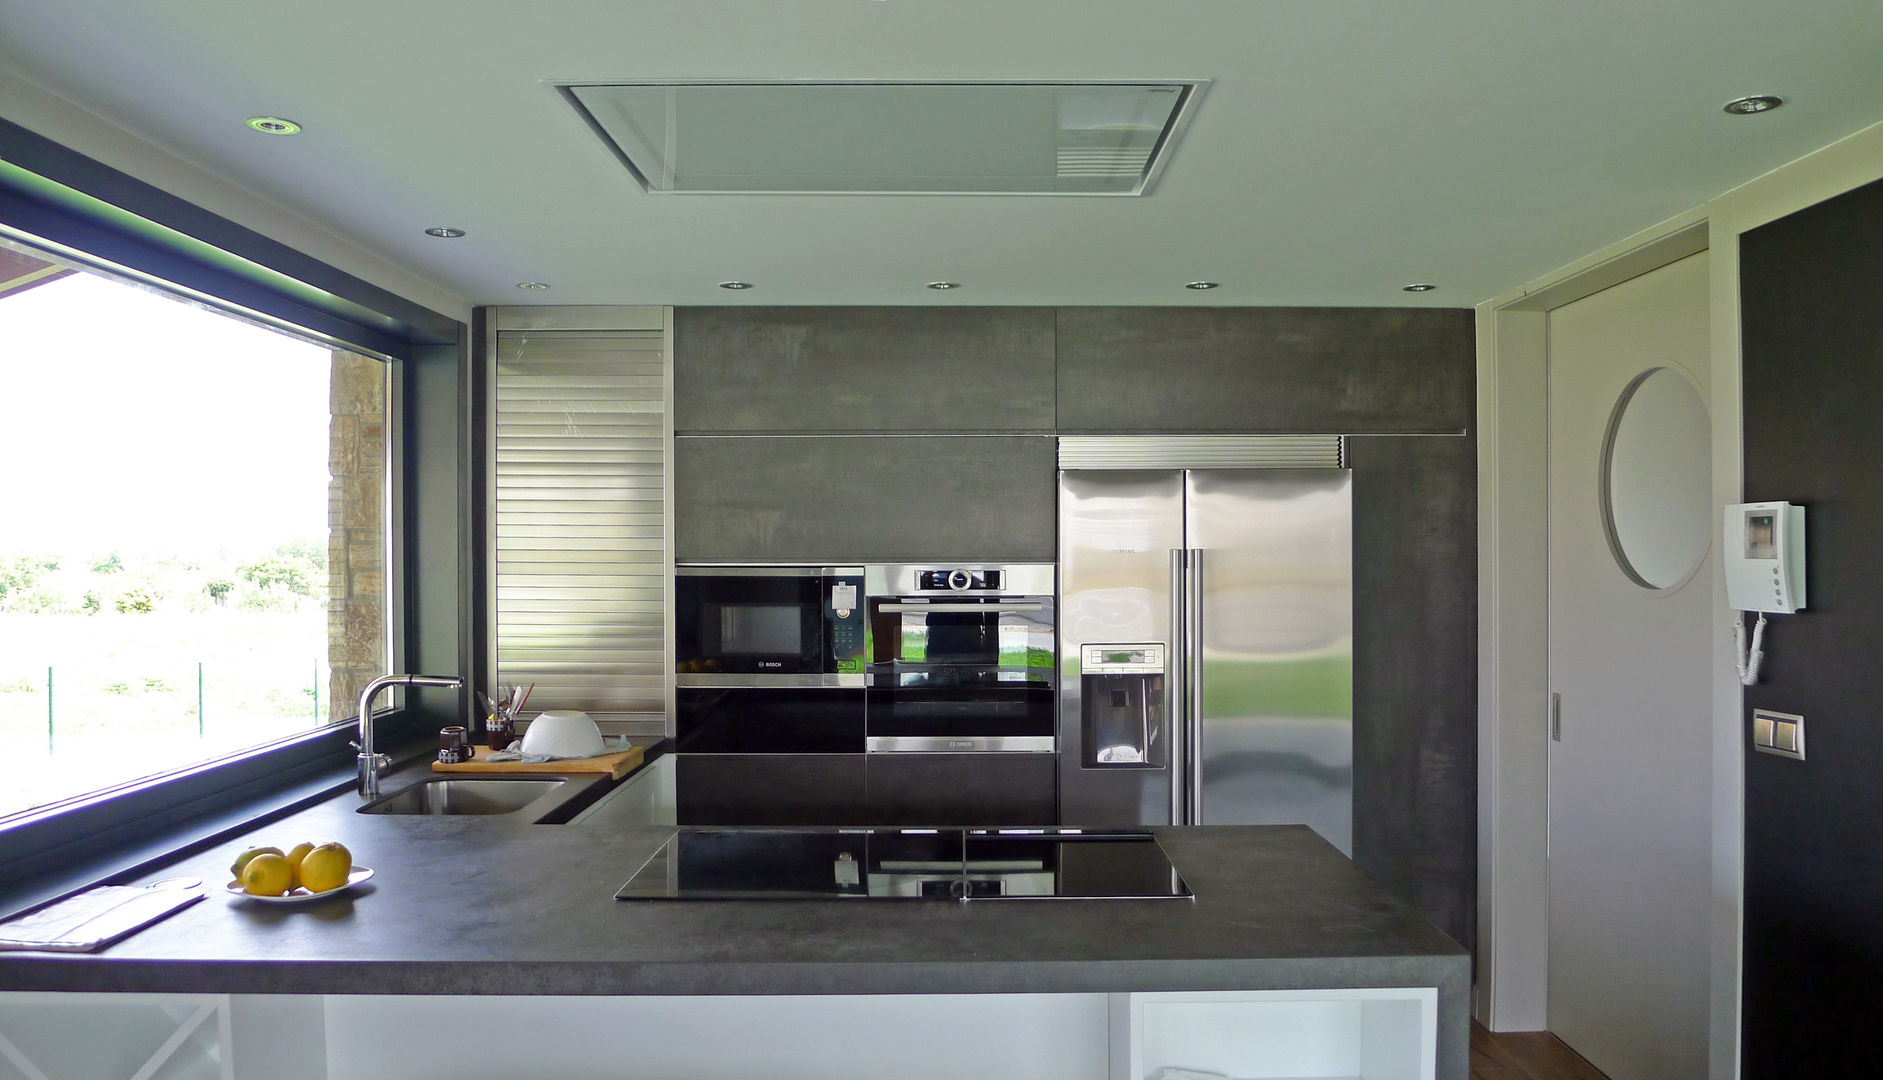 Vivienda en Veigue, AD+ arquitectura AD+ arquitectura ラスティックデザインの キッチン セラミック